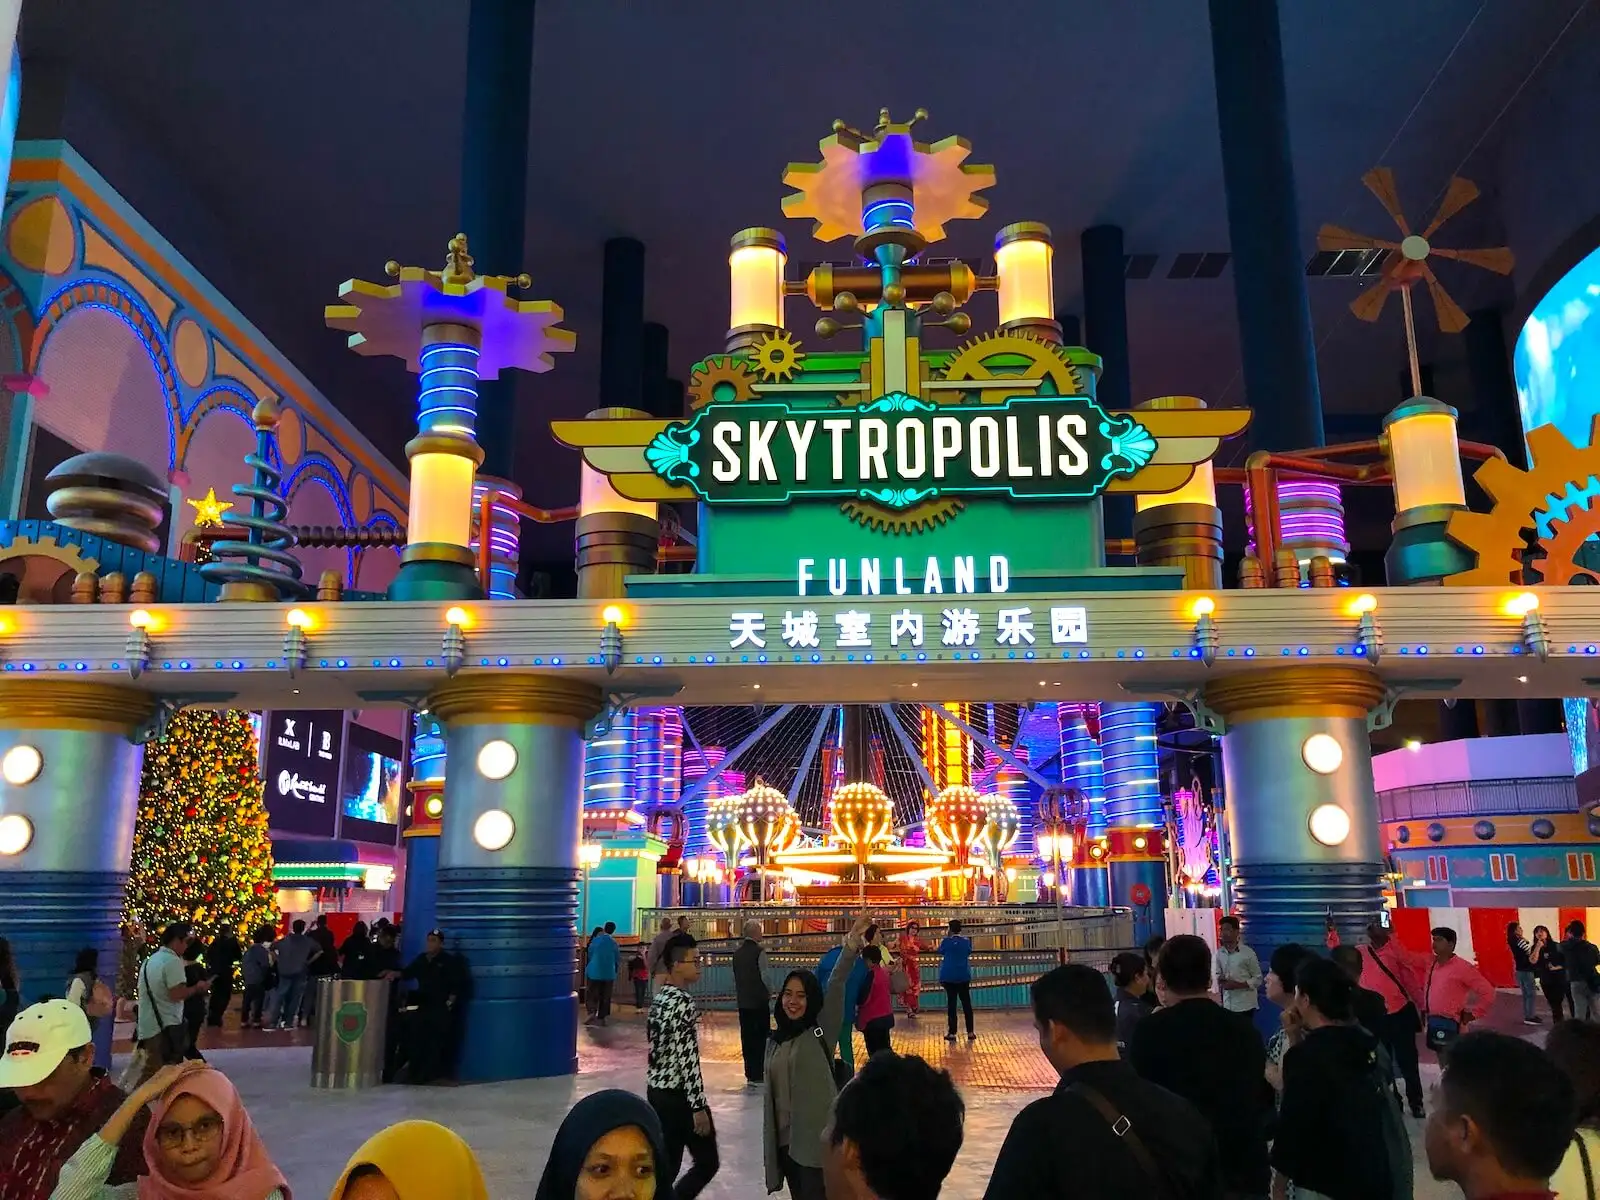 du lịch Singapore Malaysia - Công viên giải trí Skytropolis 